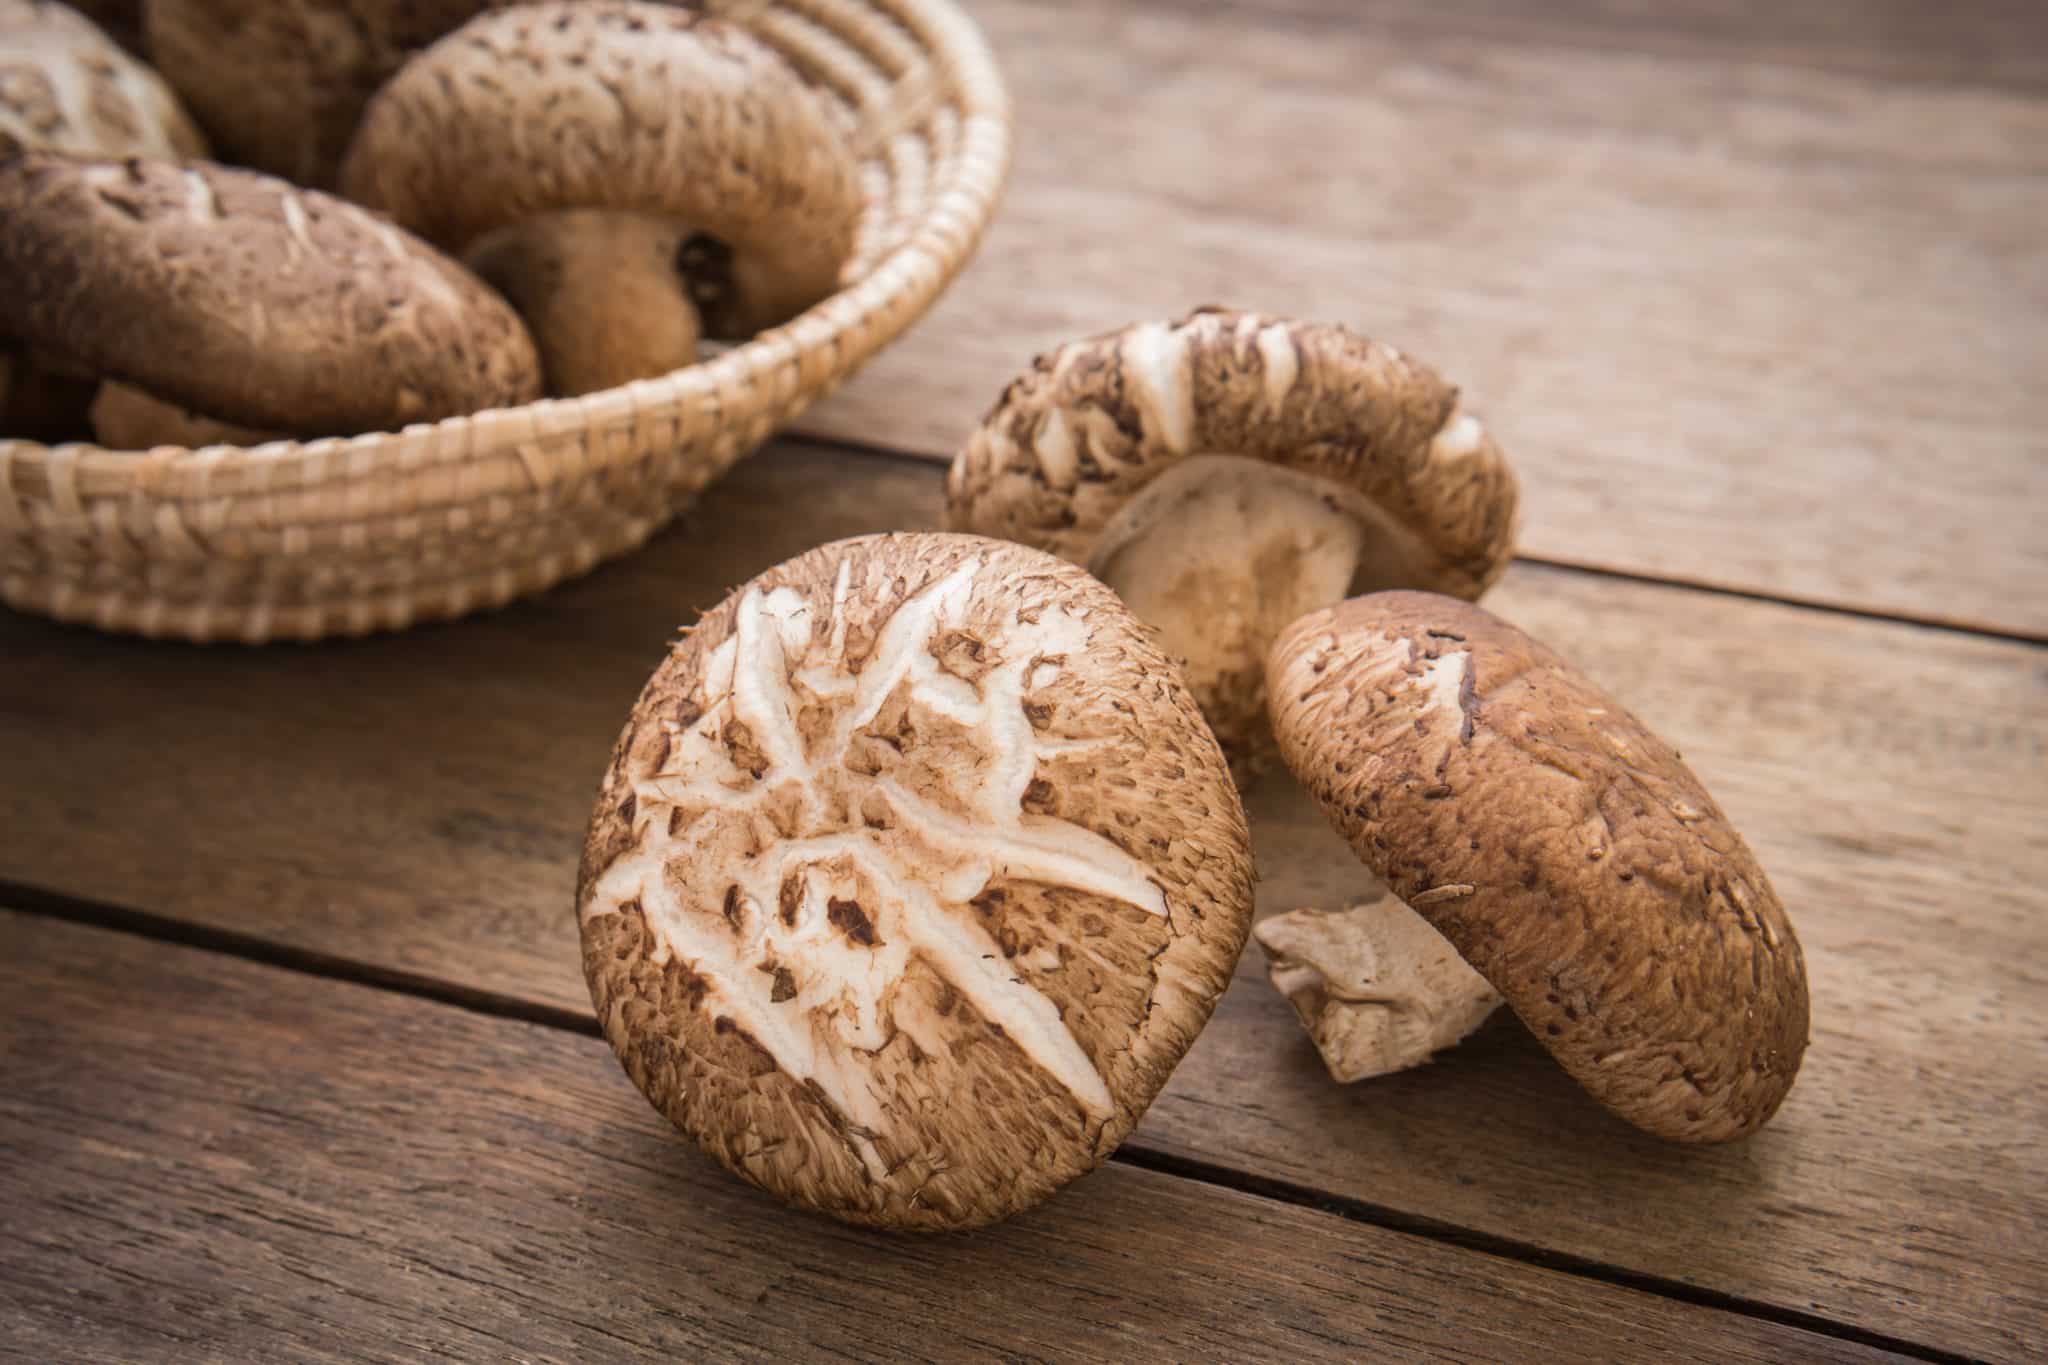 Shiitake mushrooms on table